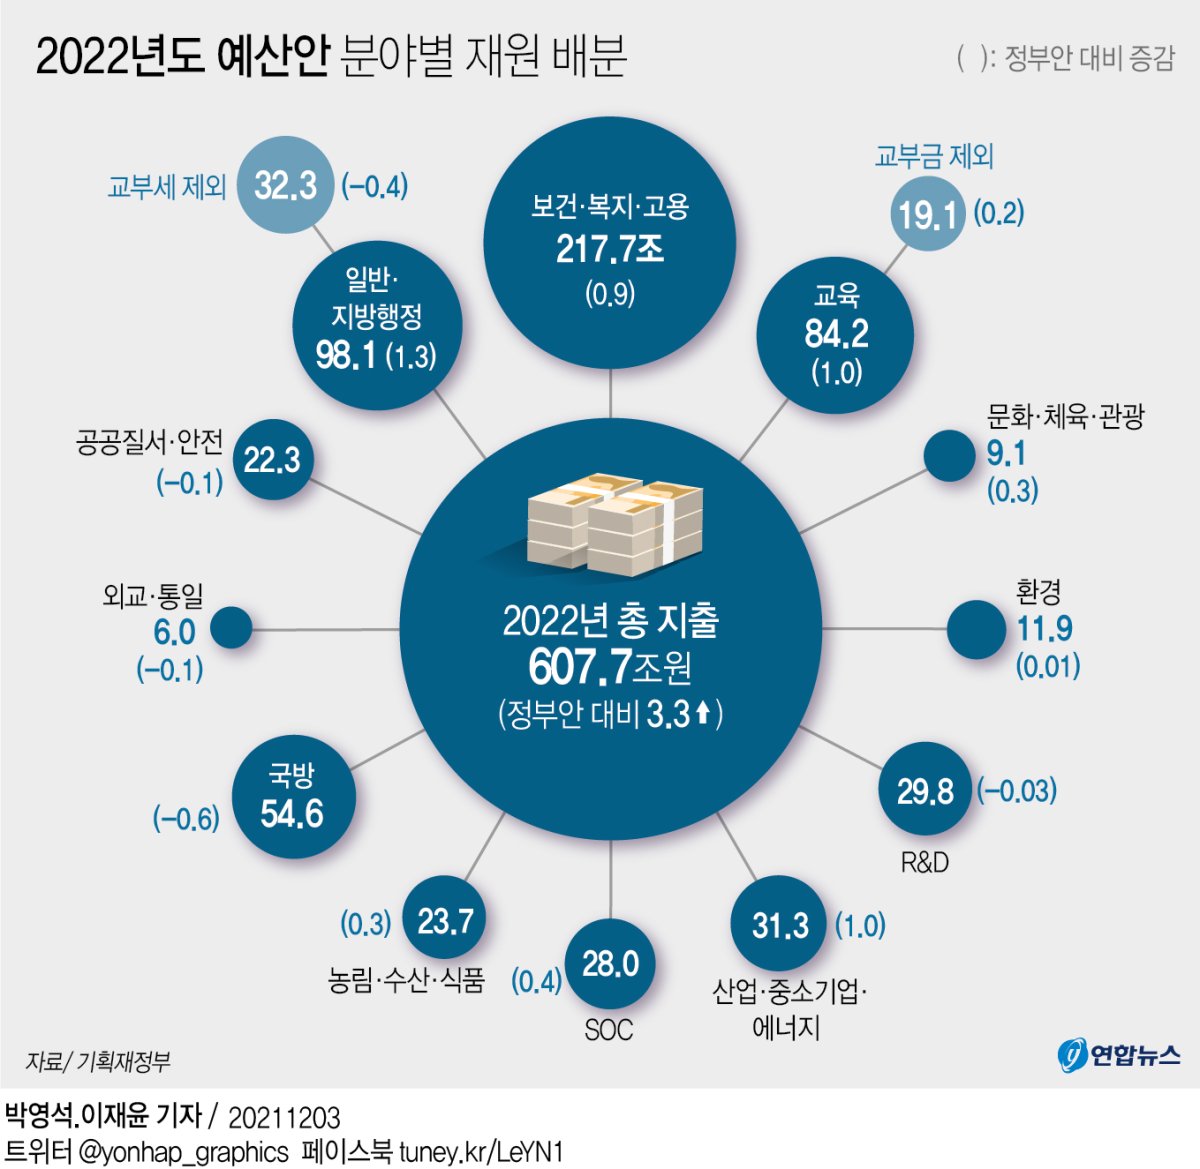 [그래픽] 2022년도 예산안 분야별 재원 배분